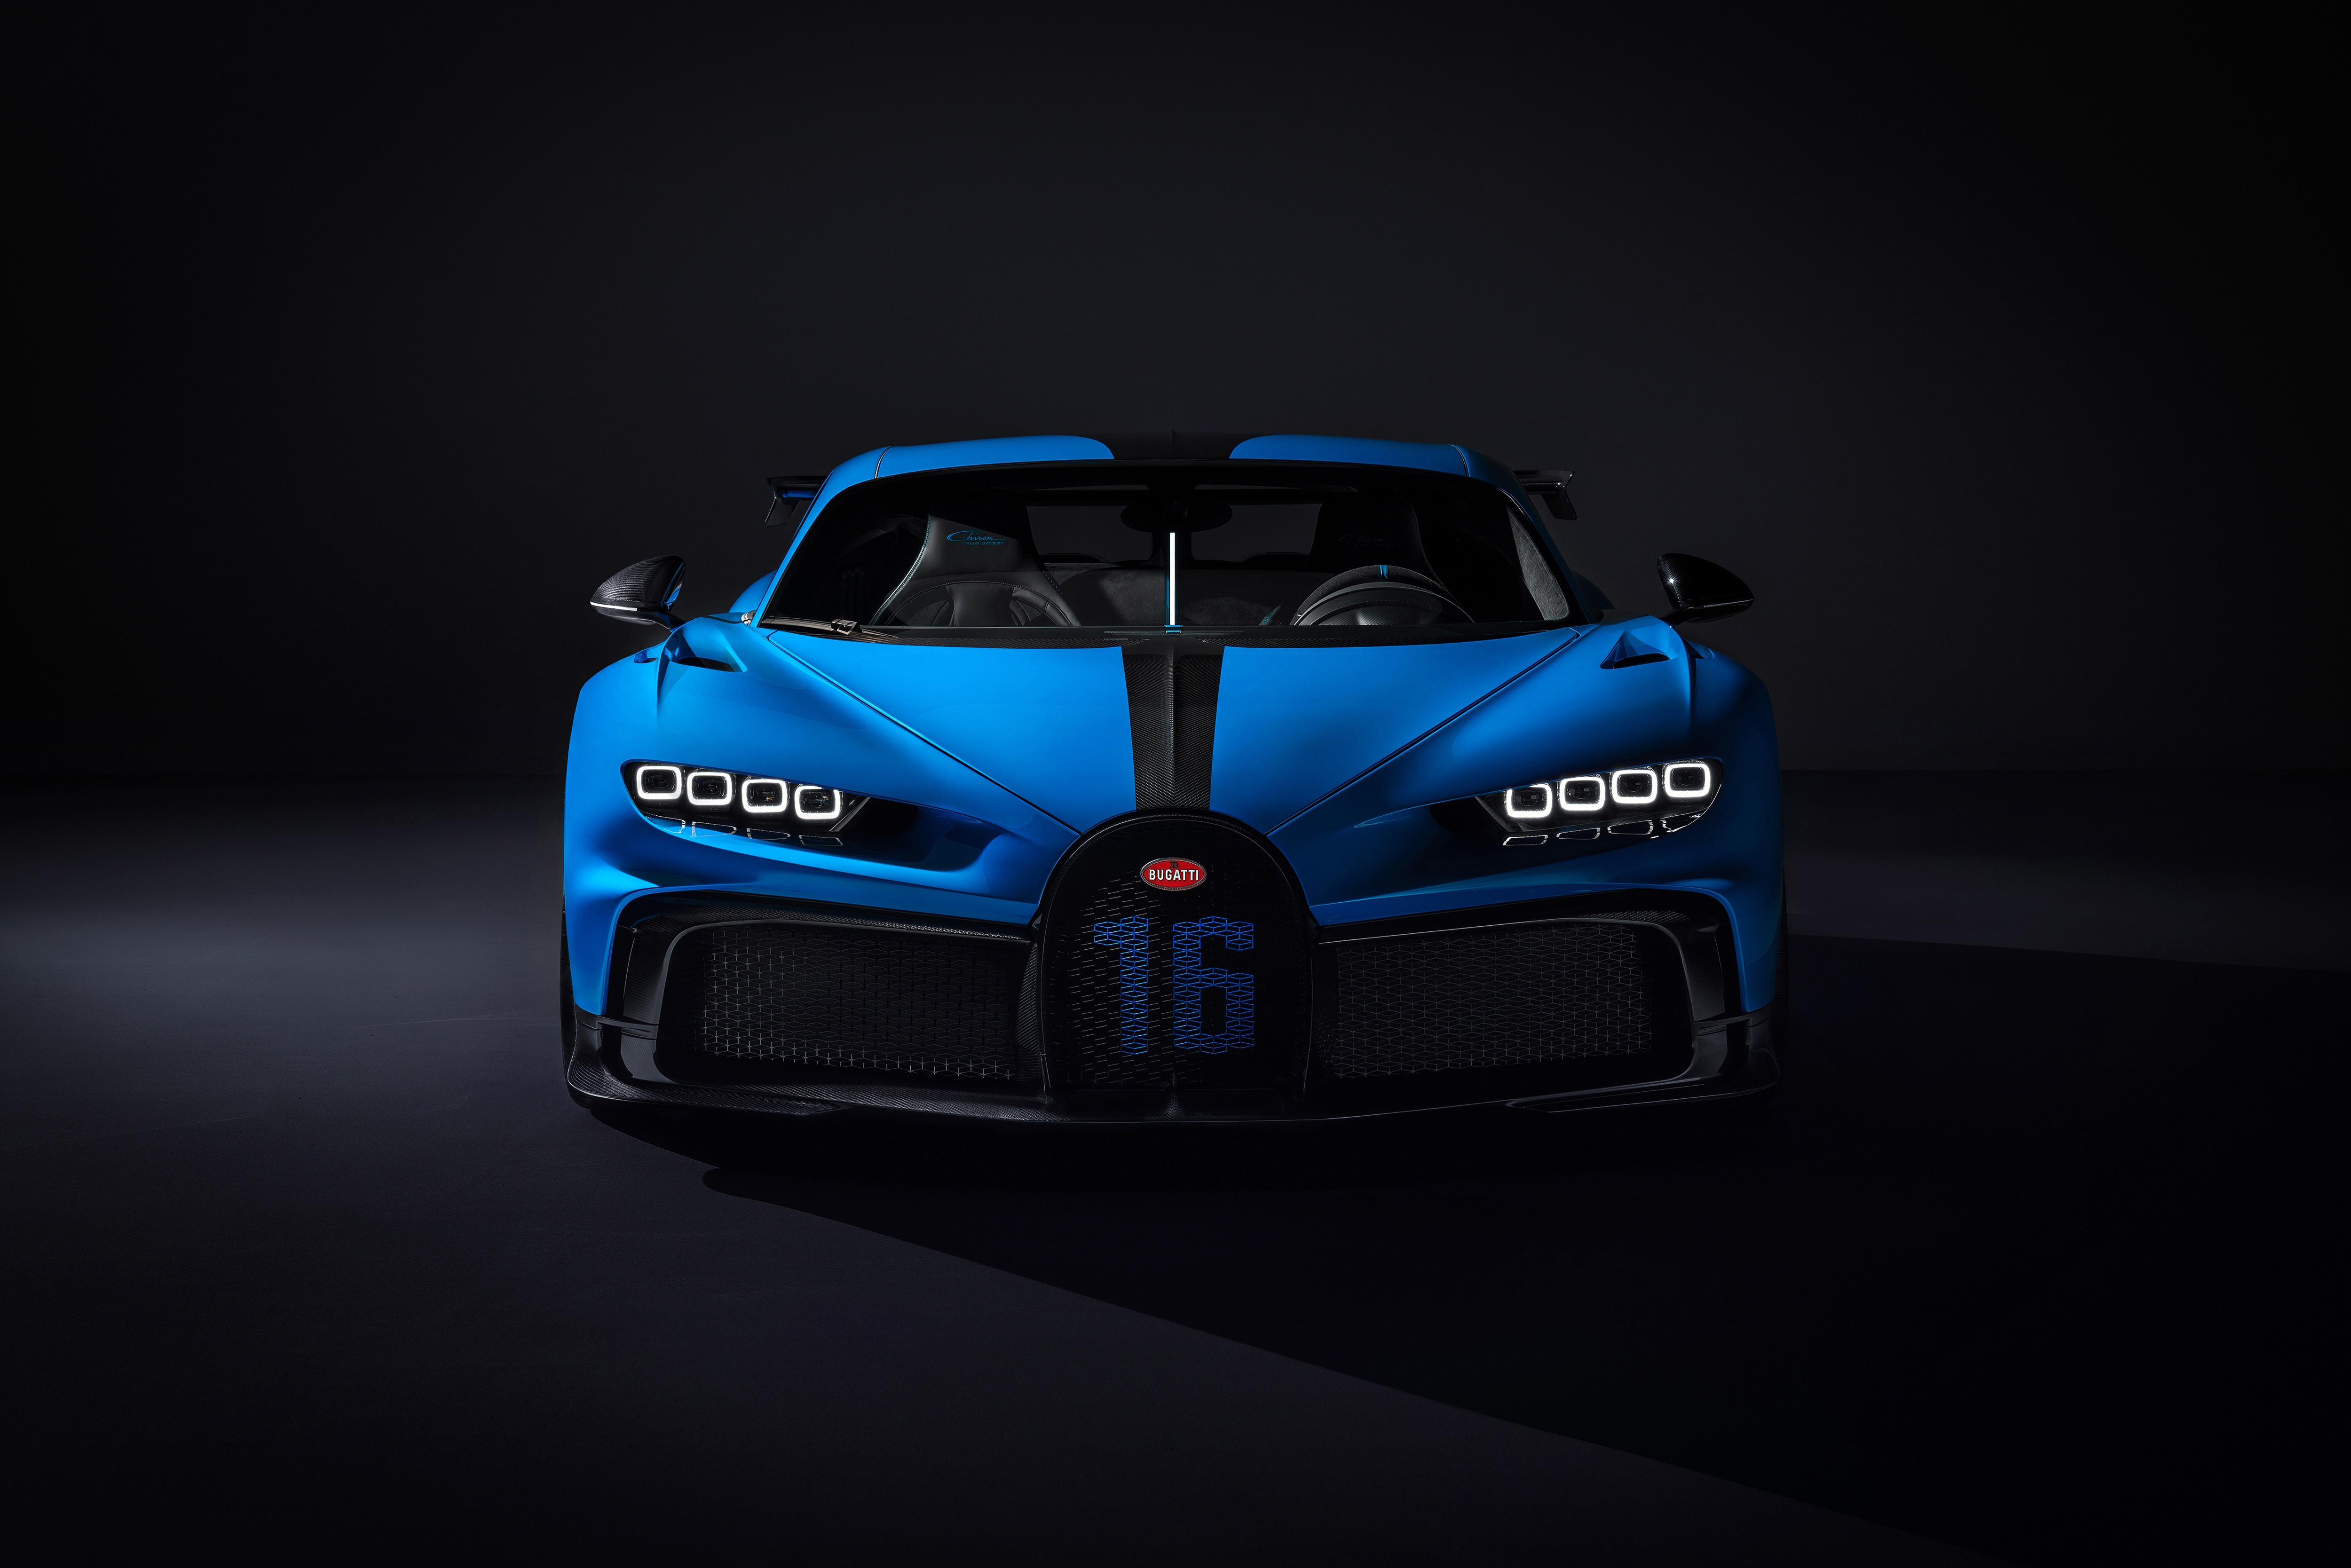 Télécharger des fonds d'écran Bugatti Chiron Pur Sport HD